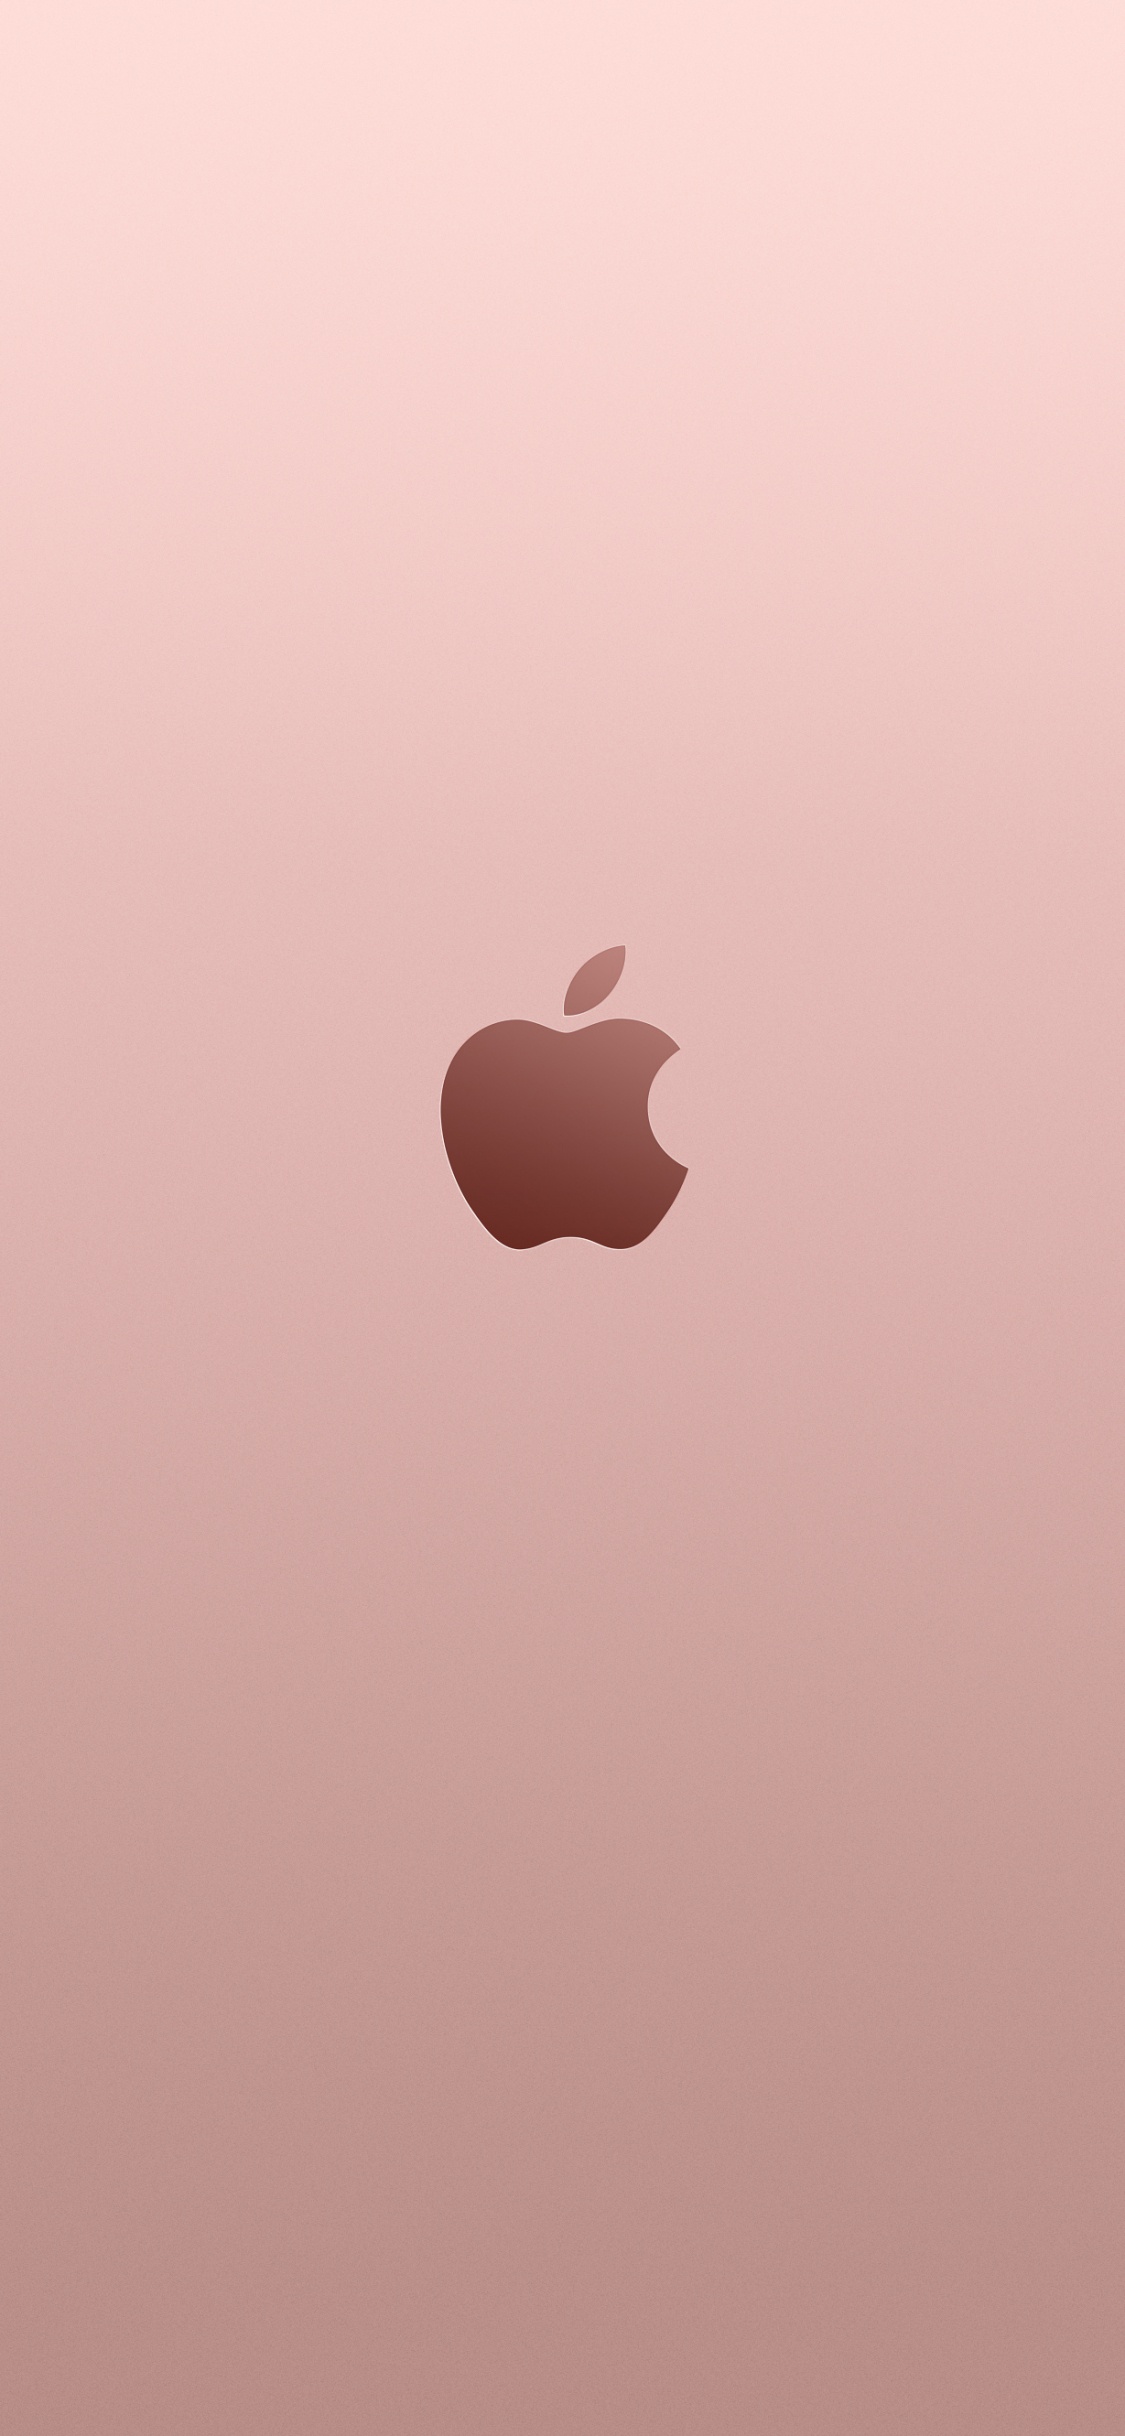 Apple, 黄金, 粉红色, 心脏, 天空 壁纸 1125x2436 允许